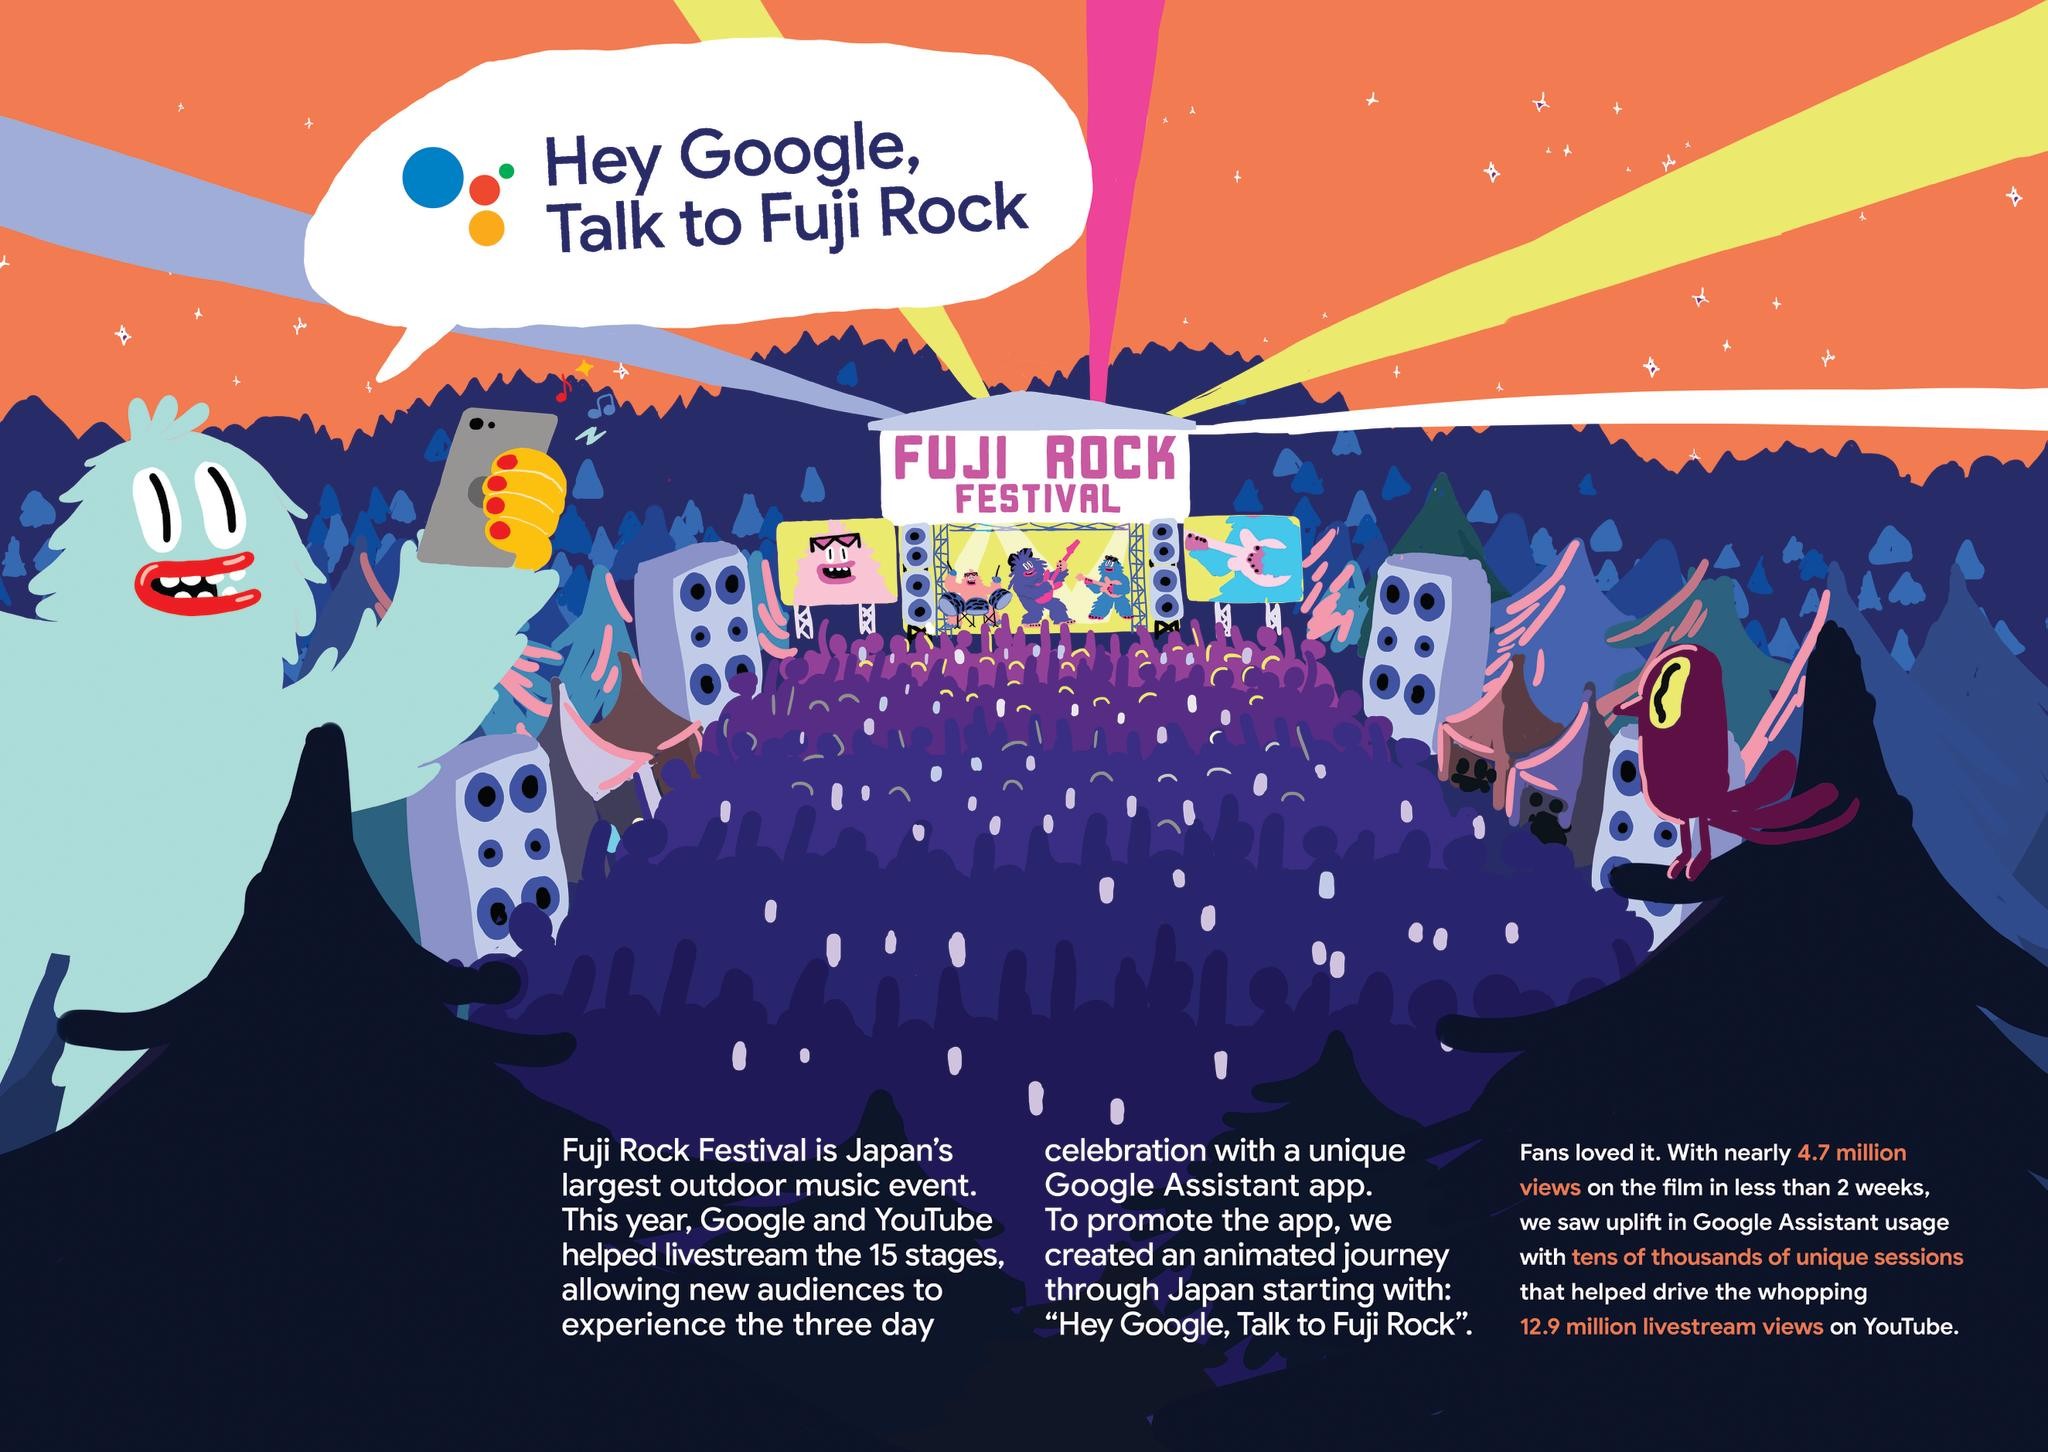 Google Assistant: Talk to Fuji Rock